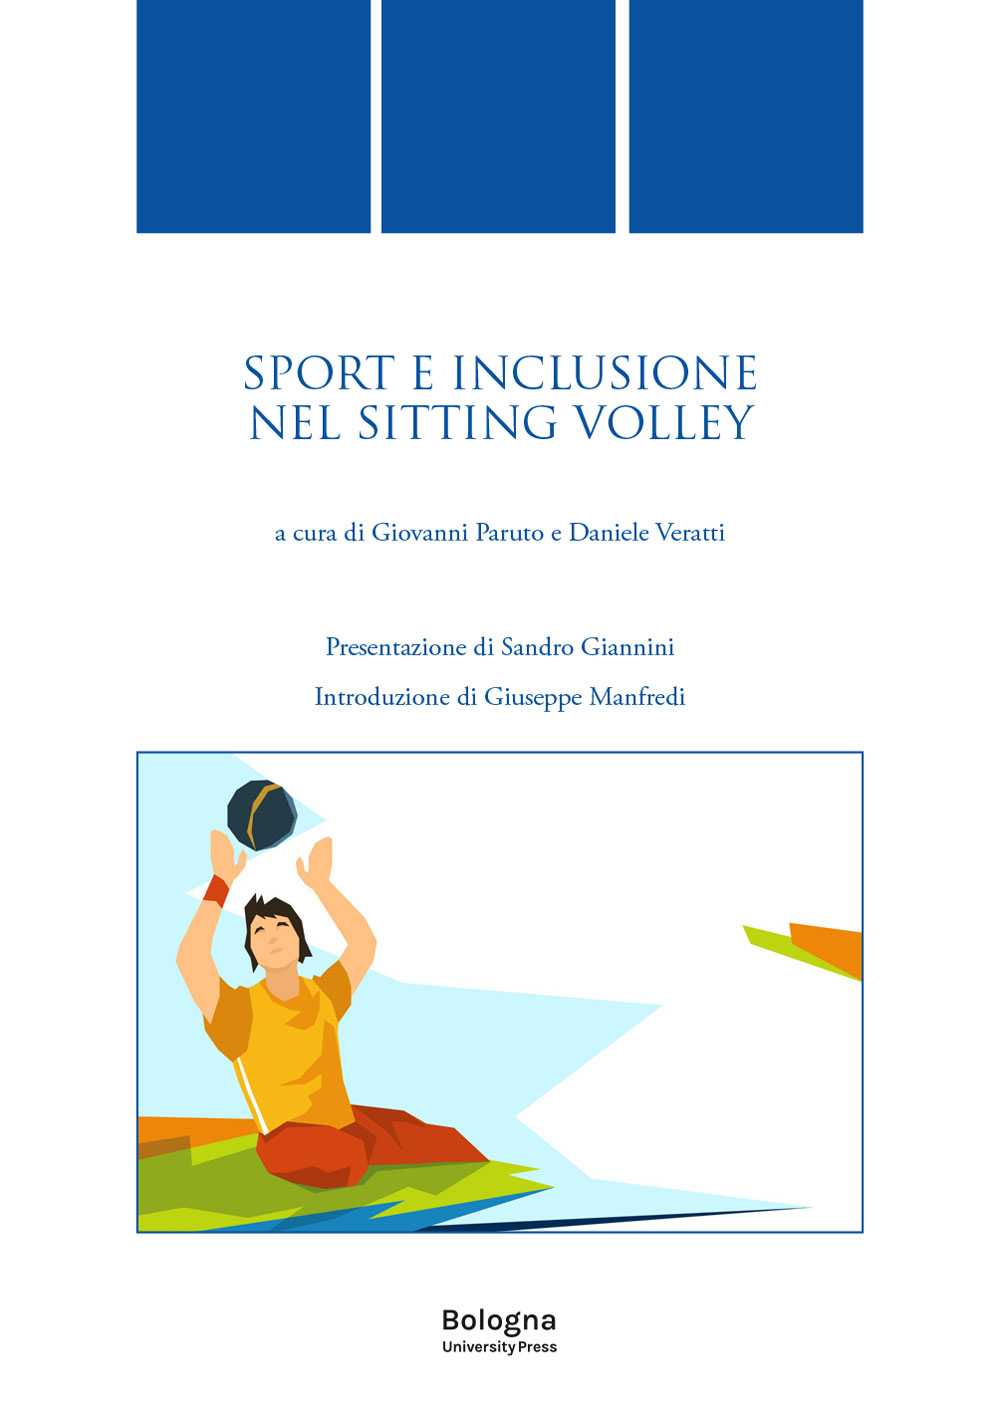 Sport e inclusione nel sitting volley - Bologna University Press